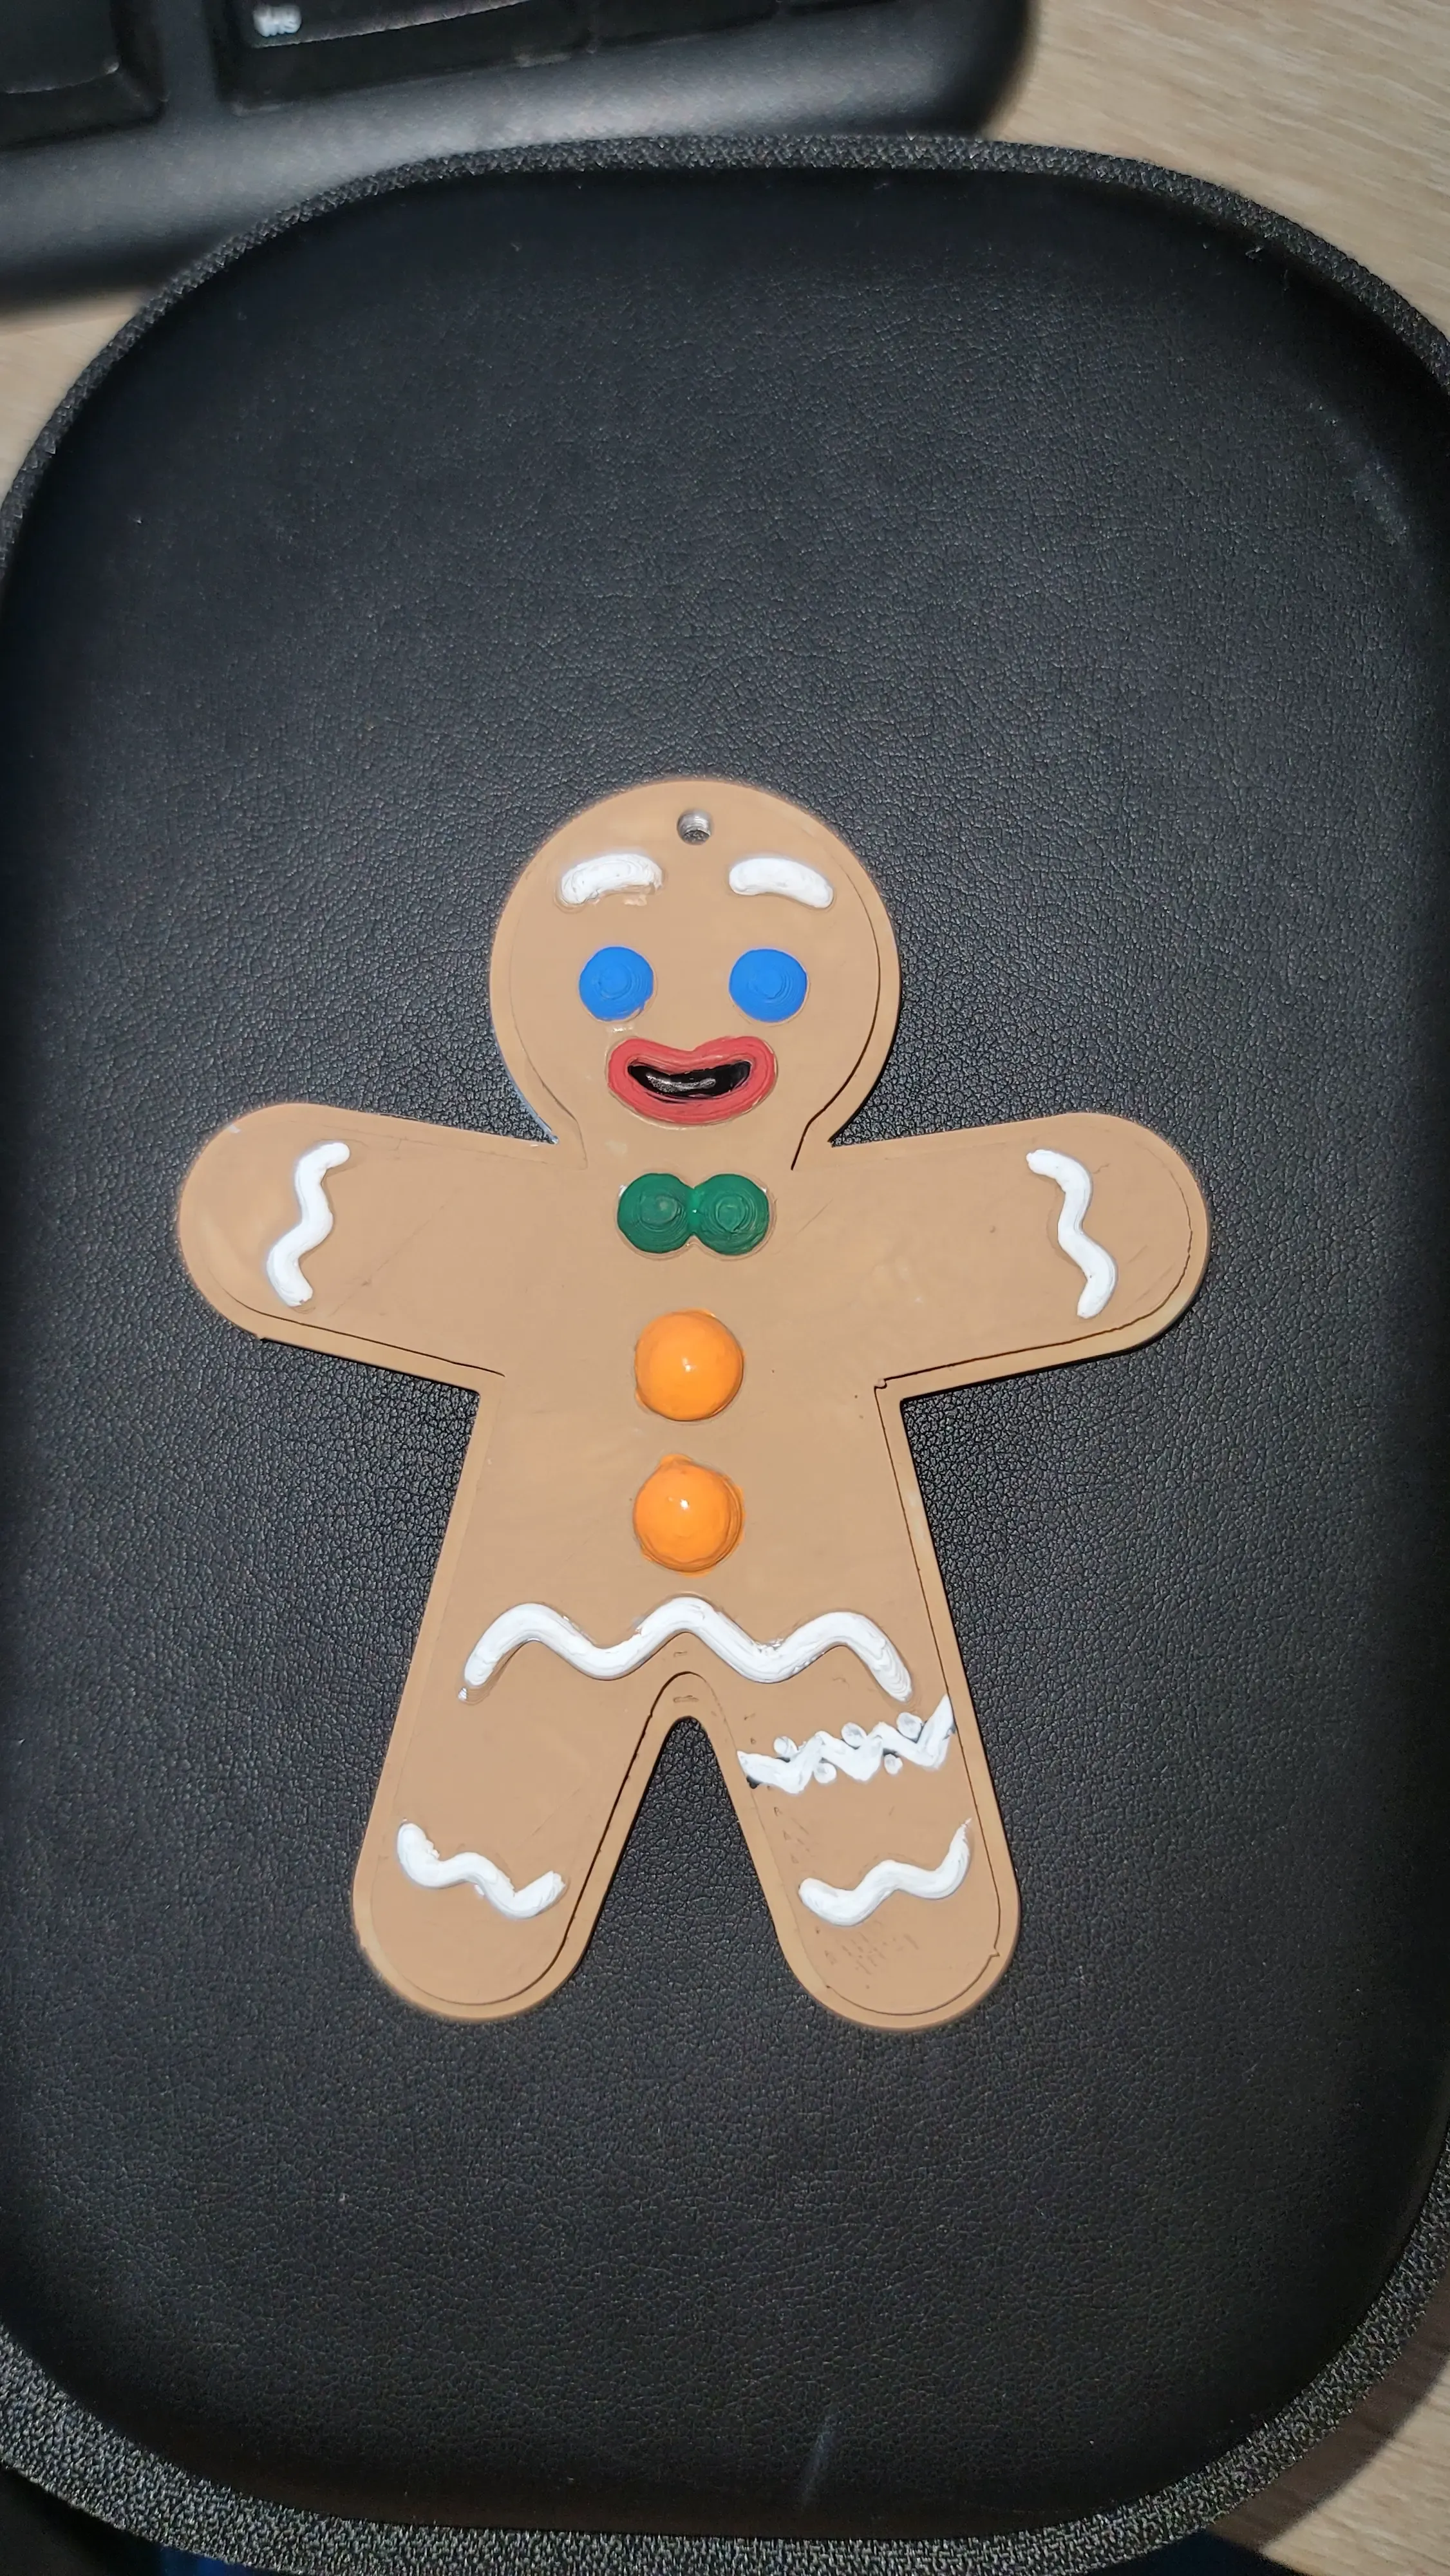 Gingerbread Man - Not the gumdrop buttons!!!